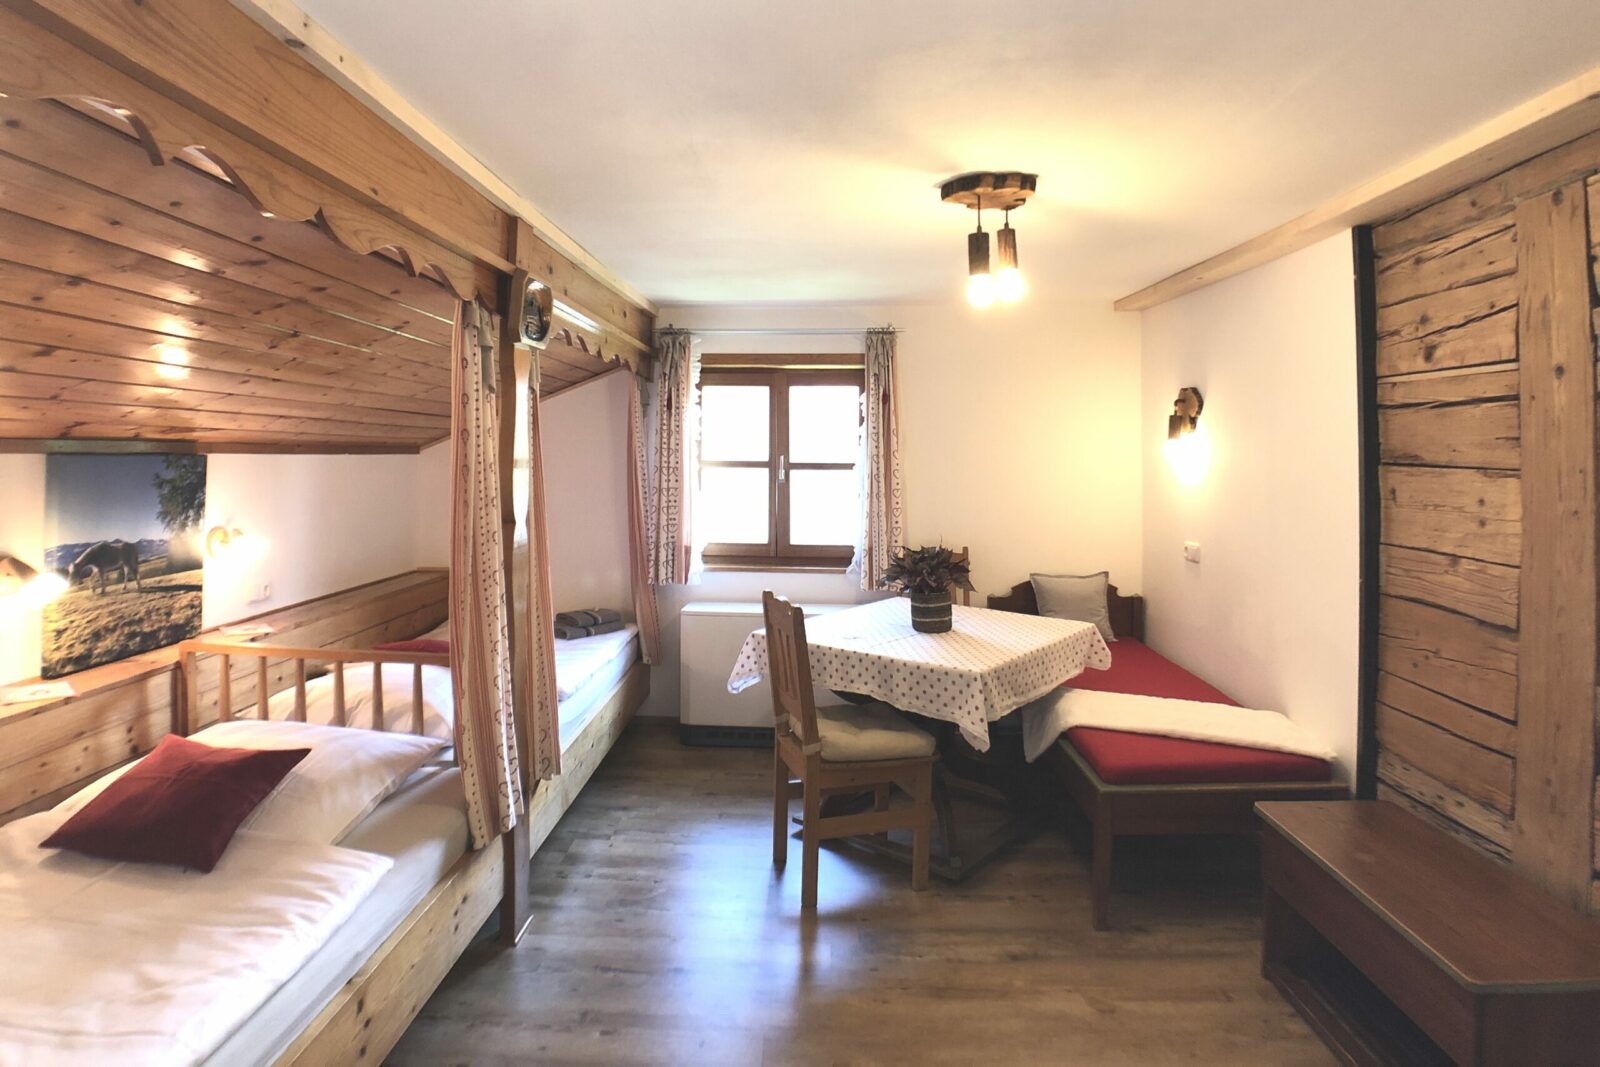 Kinderzimmer in der Ferienwohnung Bergblick im Bauernhaus. Zwei große Kojenbetten und Kanapee. Blick auf freigelegte historische Holzbalken.